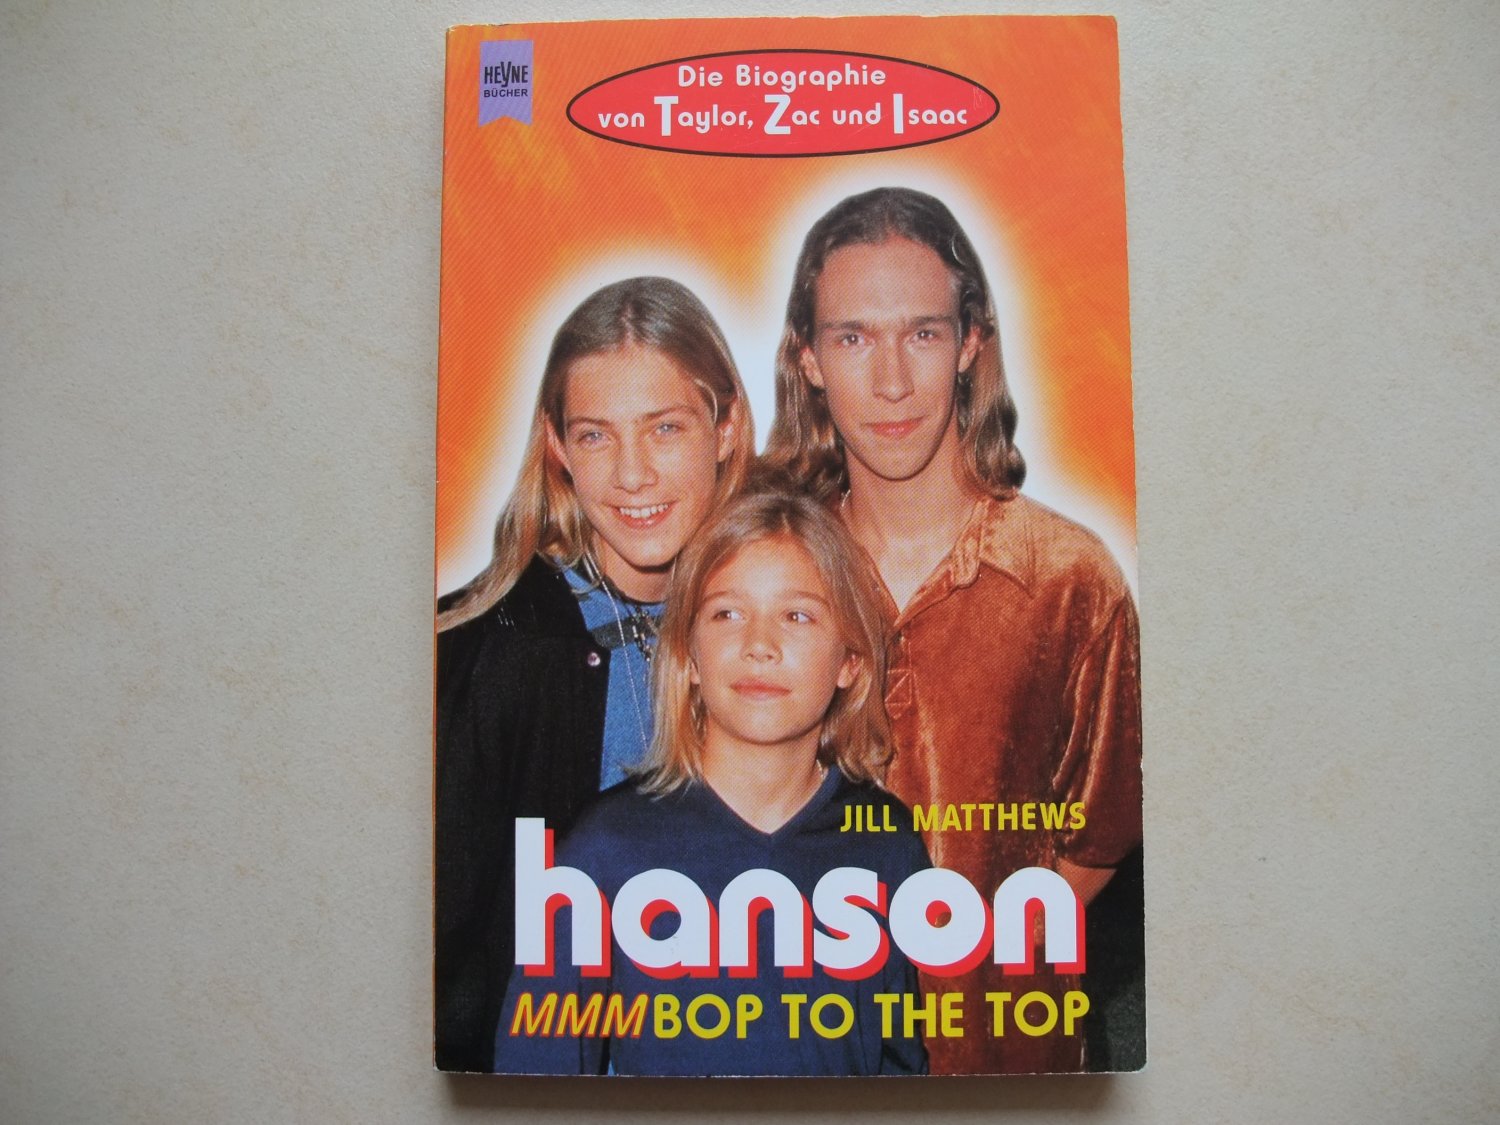 Hanson: Mmmbop to the Top: An book by Jill Matthews